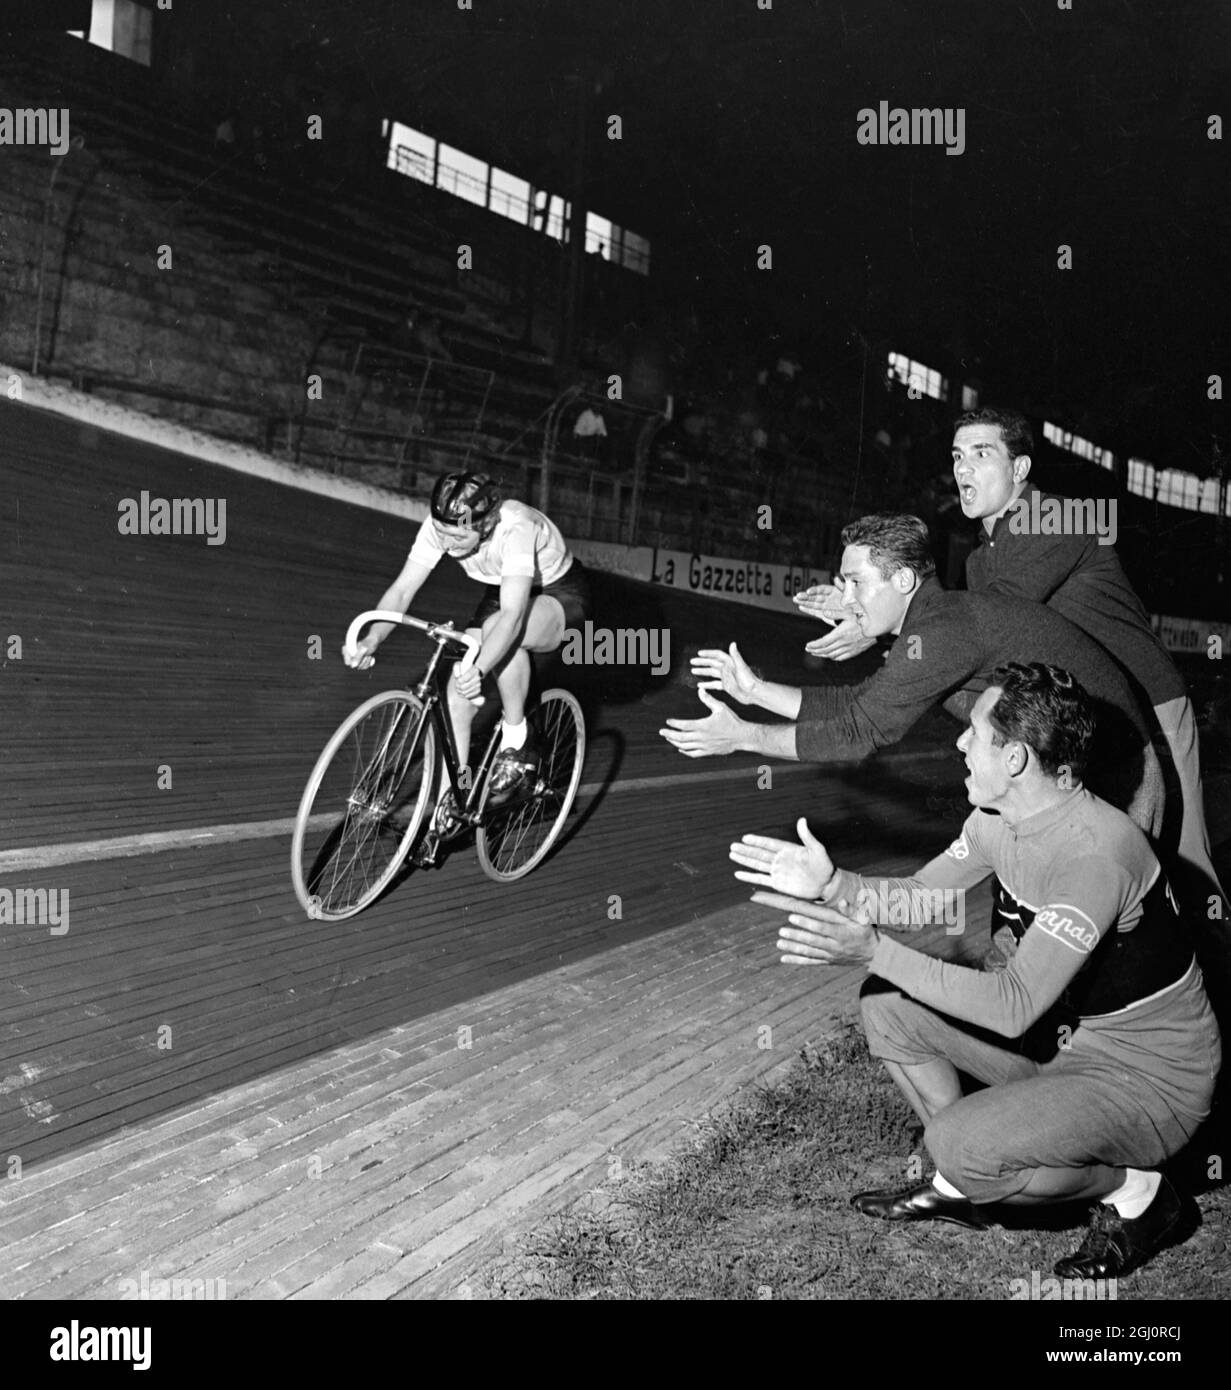 Mailand, Italien: Drei italienische Radfahrer jubeln und applaudieren, als die britische Radfahrerin Milly Robinson auf der Strecke auf dem Vigorelli Velodrome in Mailand Rennen fährt. Milly Robinson fuhr herum, um einen neuen 1-Stunden-Weltrekord für Frauen mit 39.718 km und 80 Zentimetern aufzulegen. Dies war ihr drittes Album, das von Milly aufgenommen wurde, die von zwei Jagdfans, die gekommen waren, um ihren Versuch zu sehen, angefeuert wurde. 27. September 1958 Stockfoto